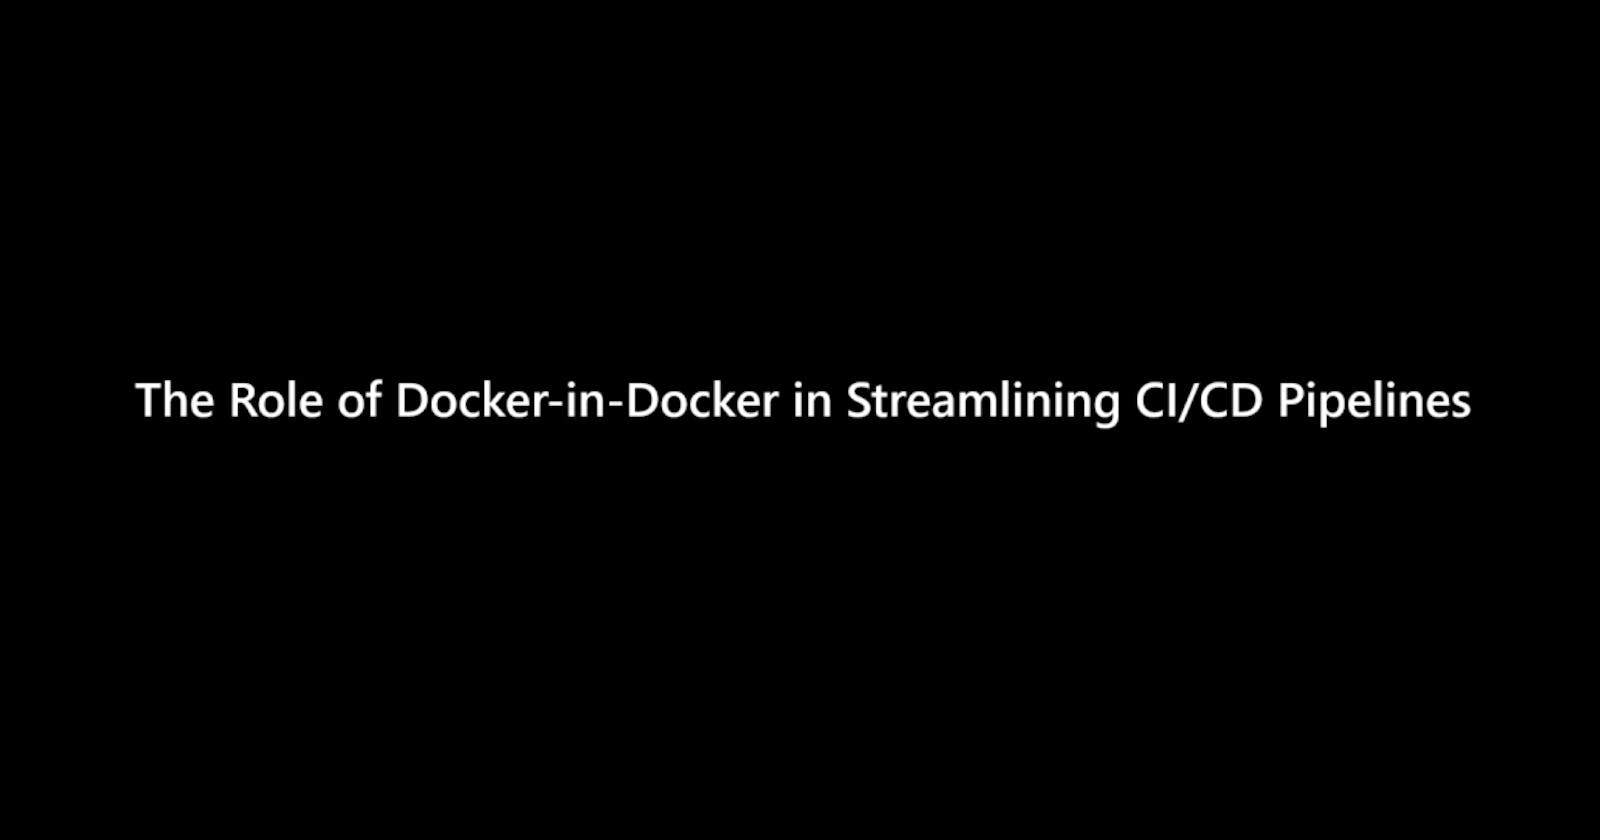 The Role of Docker-in-Docker in Streamlining CI/CD Pipelines